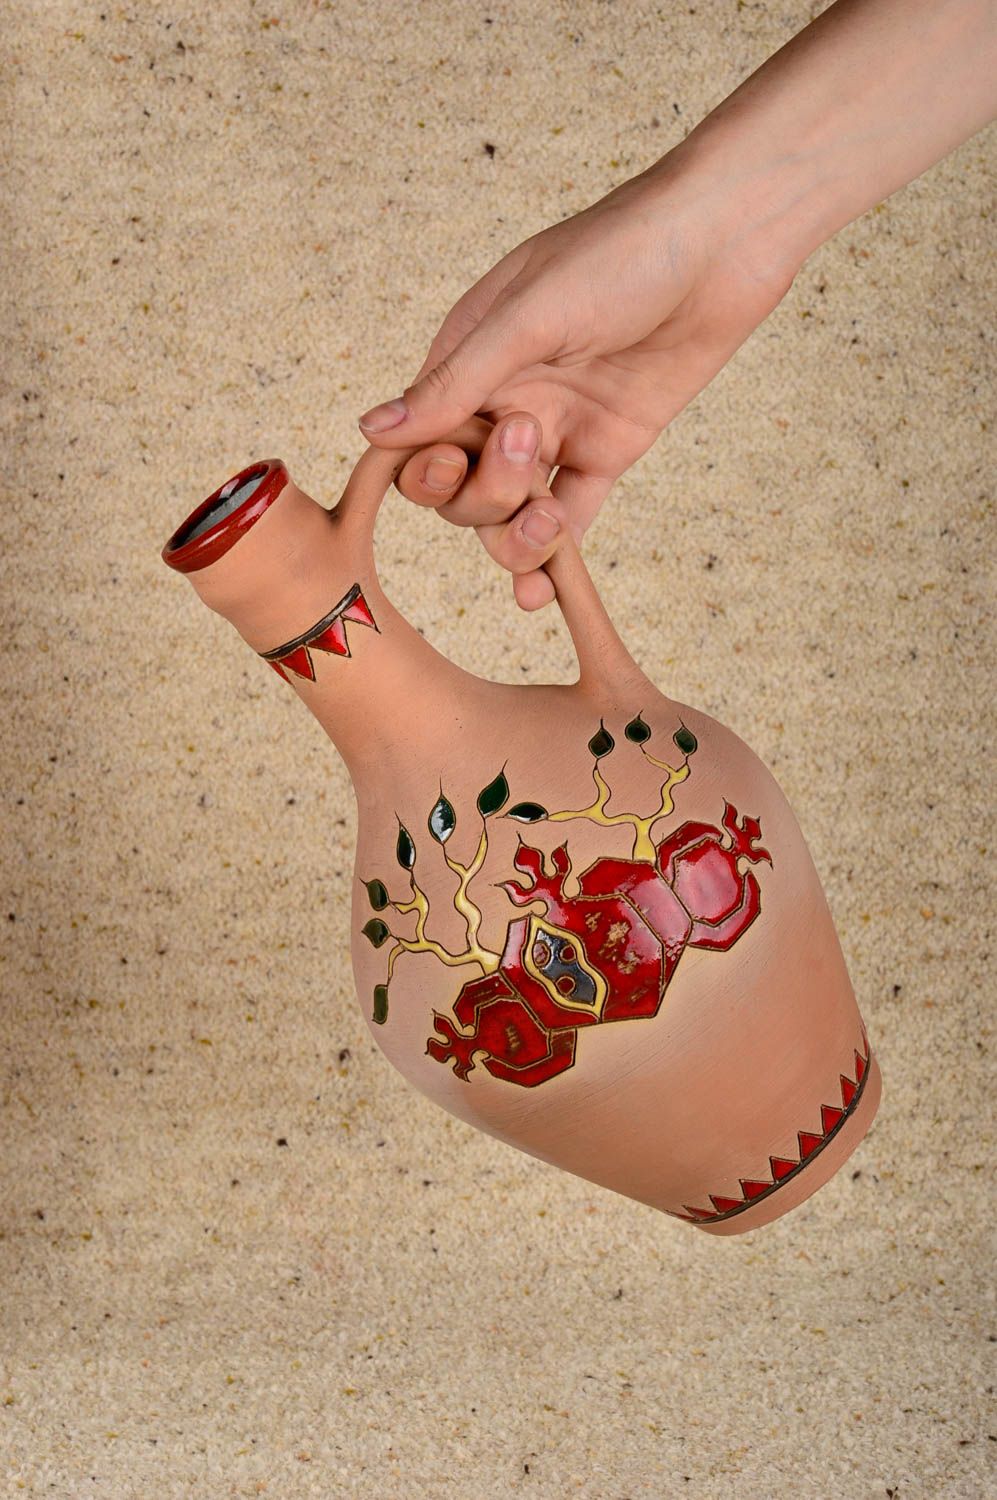 Öko Geschirr handmade Keramik Krug Küchen Deko Geschenk für Frauen 1.3 L foto 1